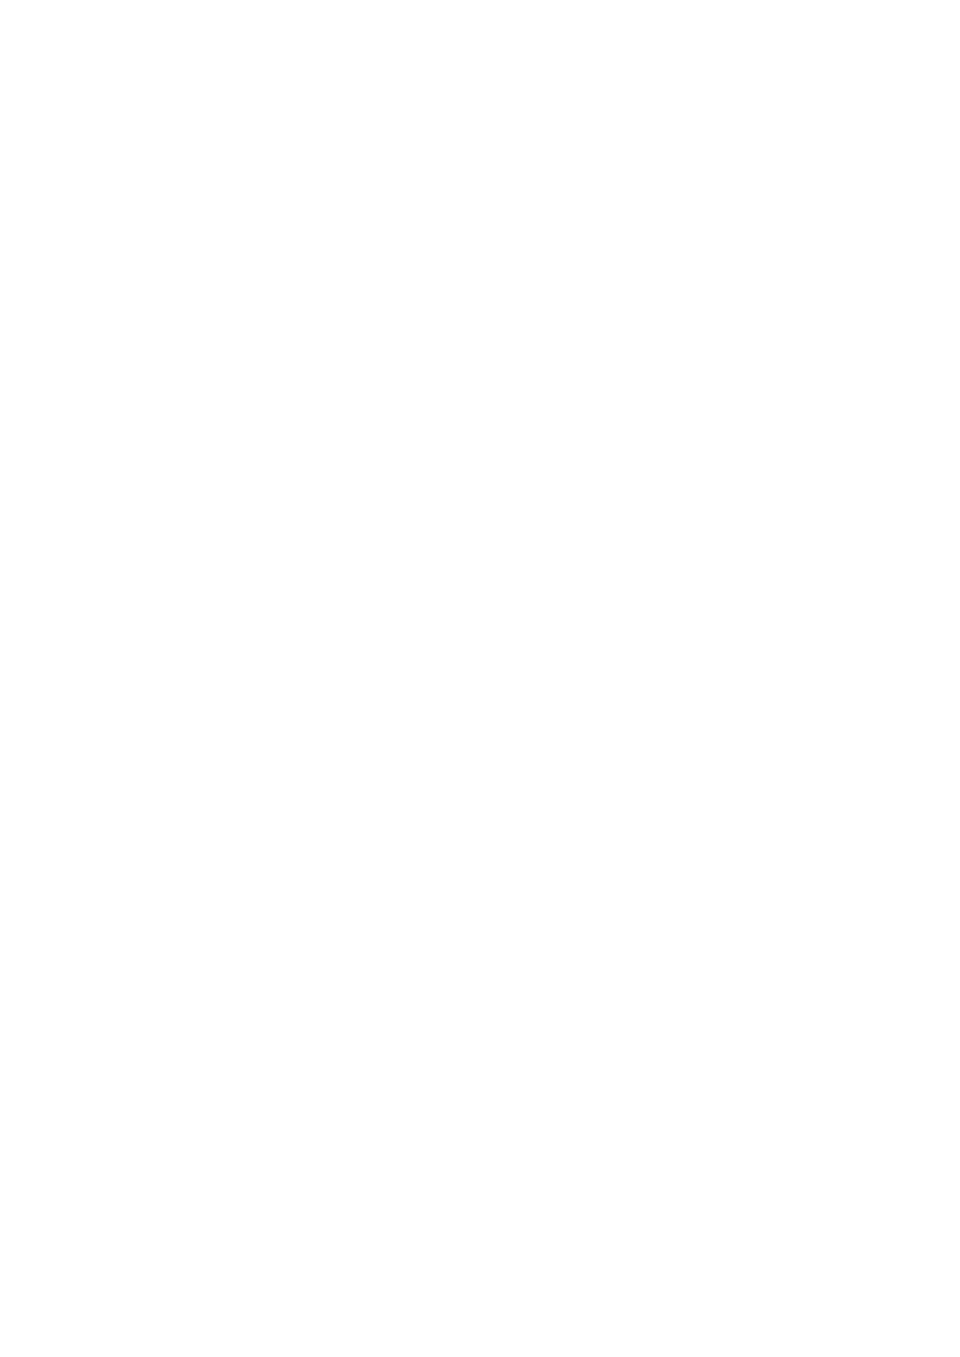 Signorili di stile rinascimentale lungo Corso Italia; - Chiesa di San Michele: pala Madonna in trono col Bambino di Neri di Bicci; - Basilica di San Francesco e affreschi di Piero della Francesca La